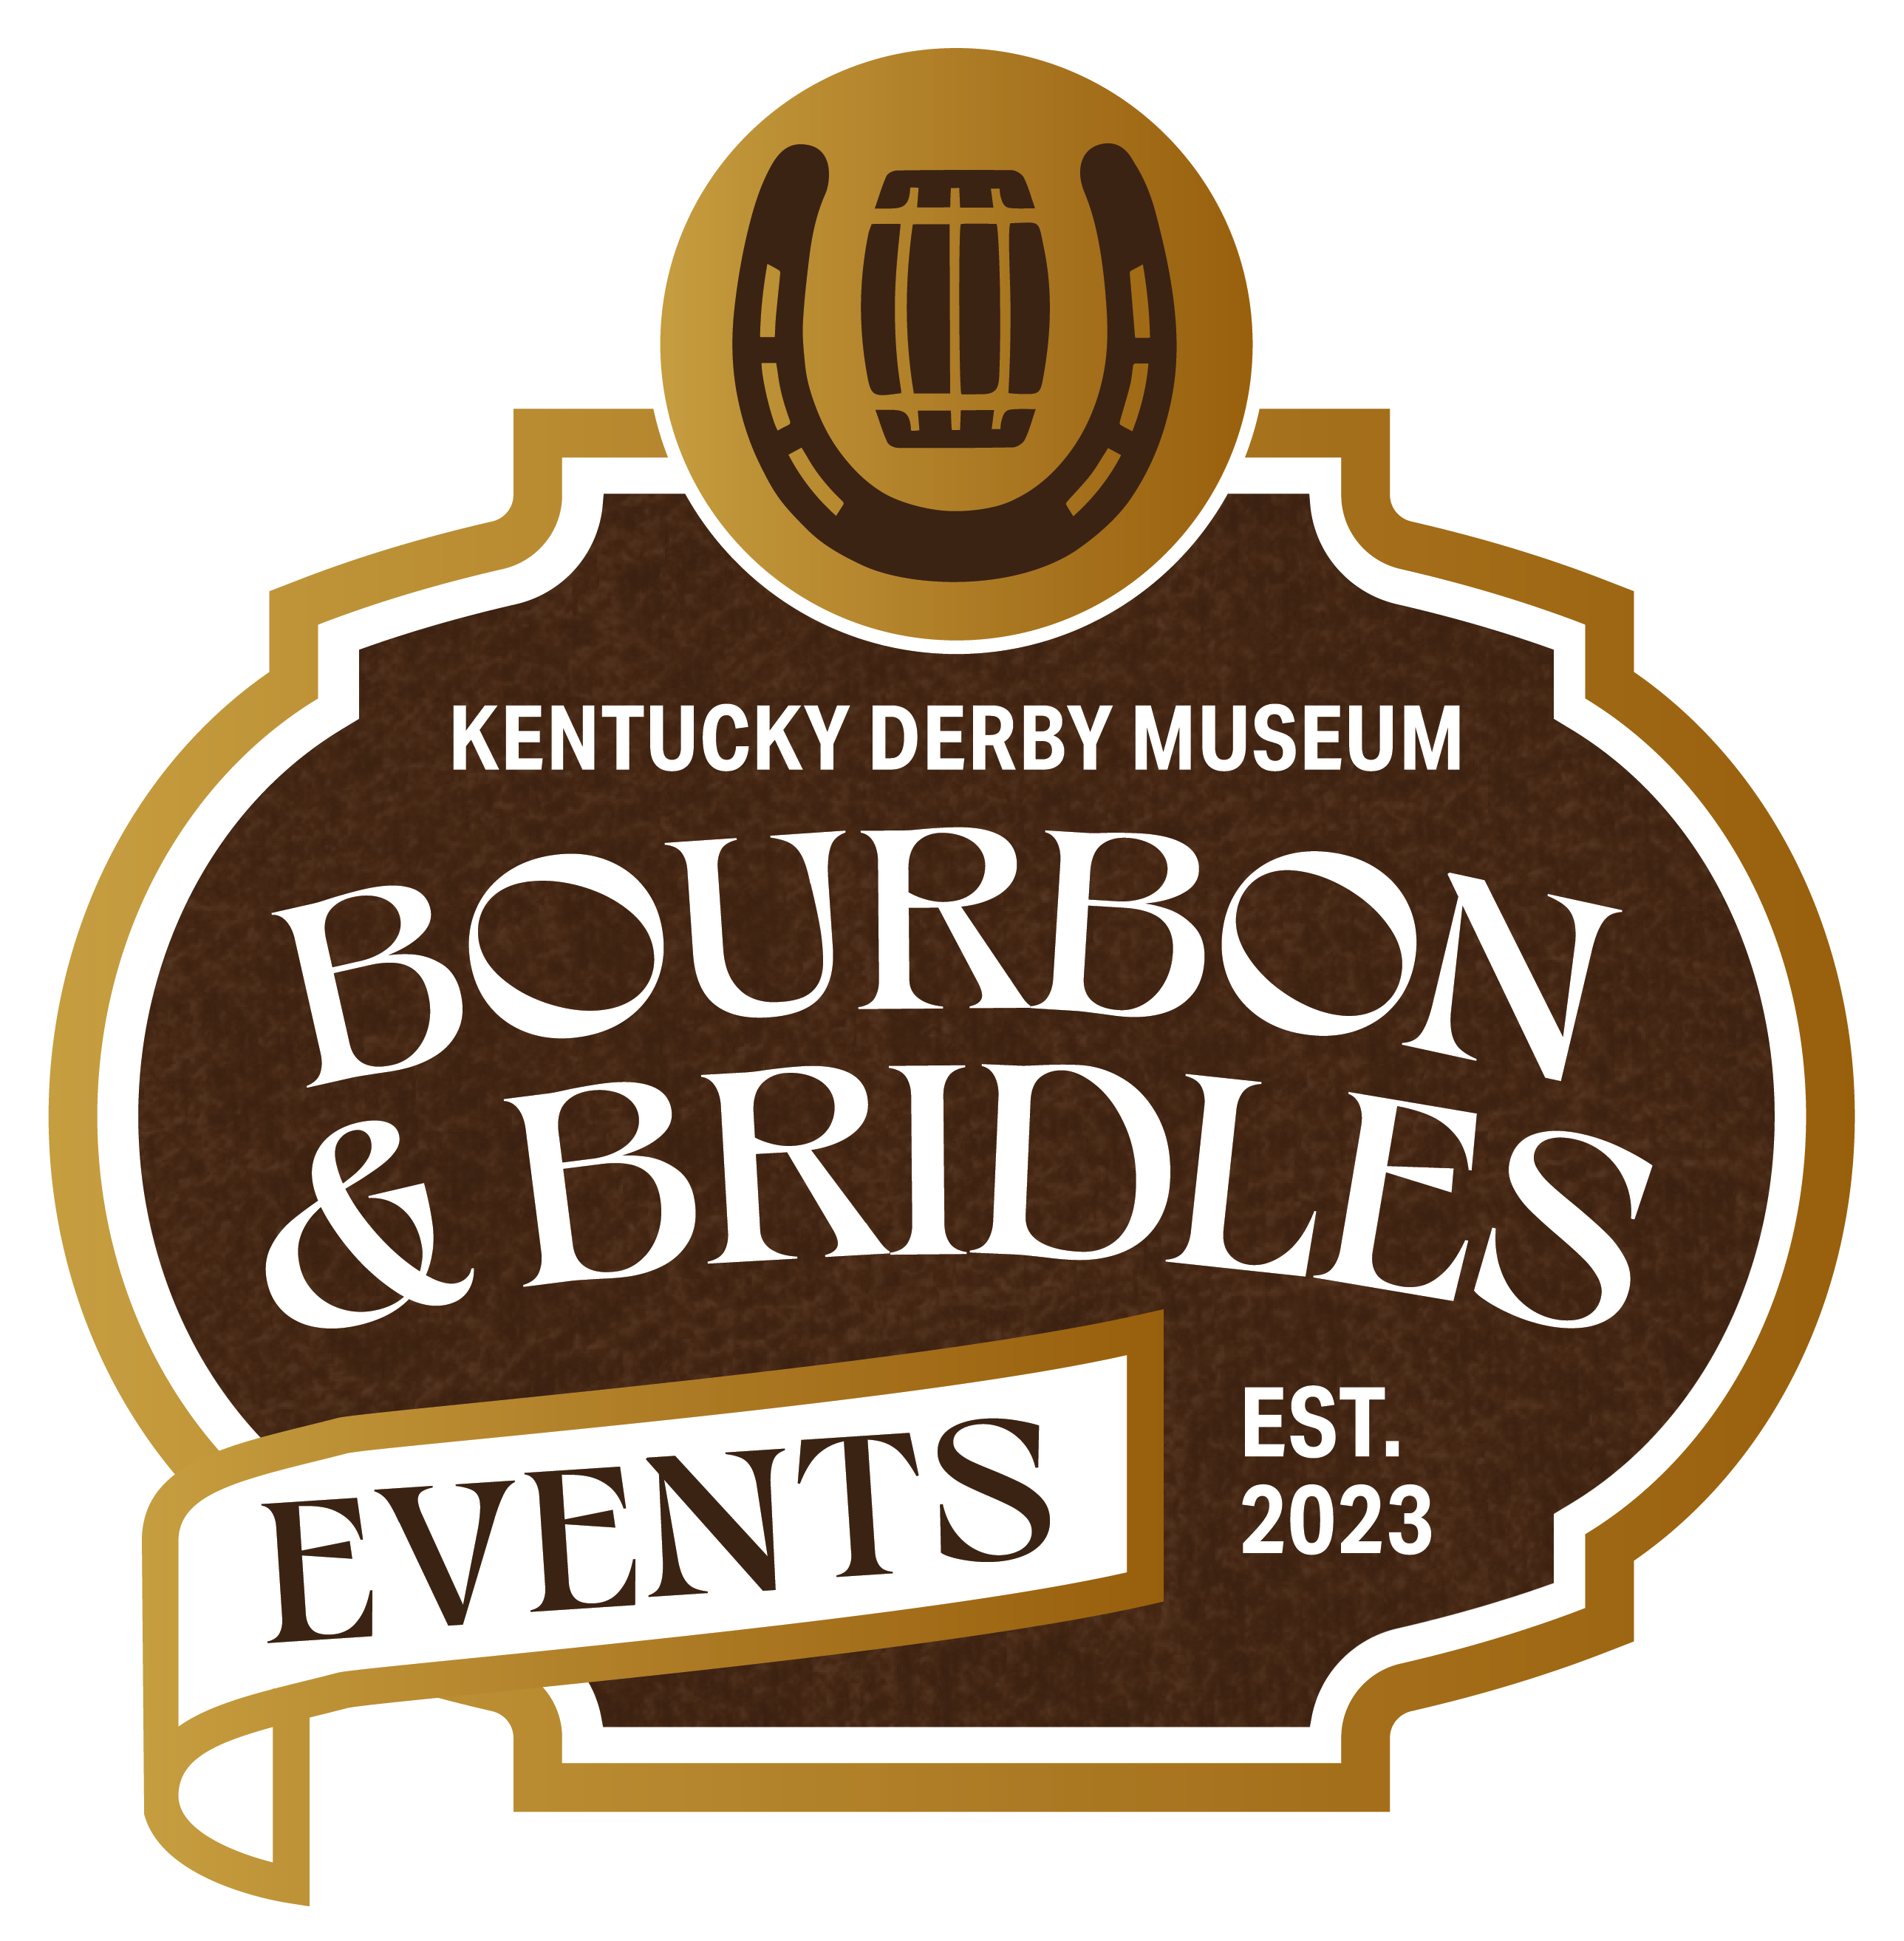 Bourbon & Bridles Events logo